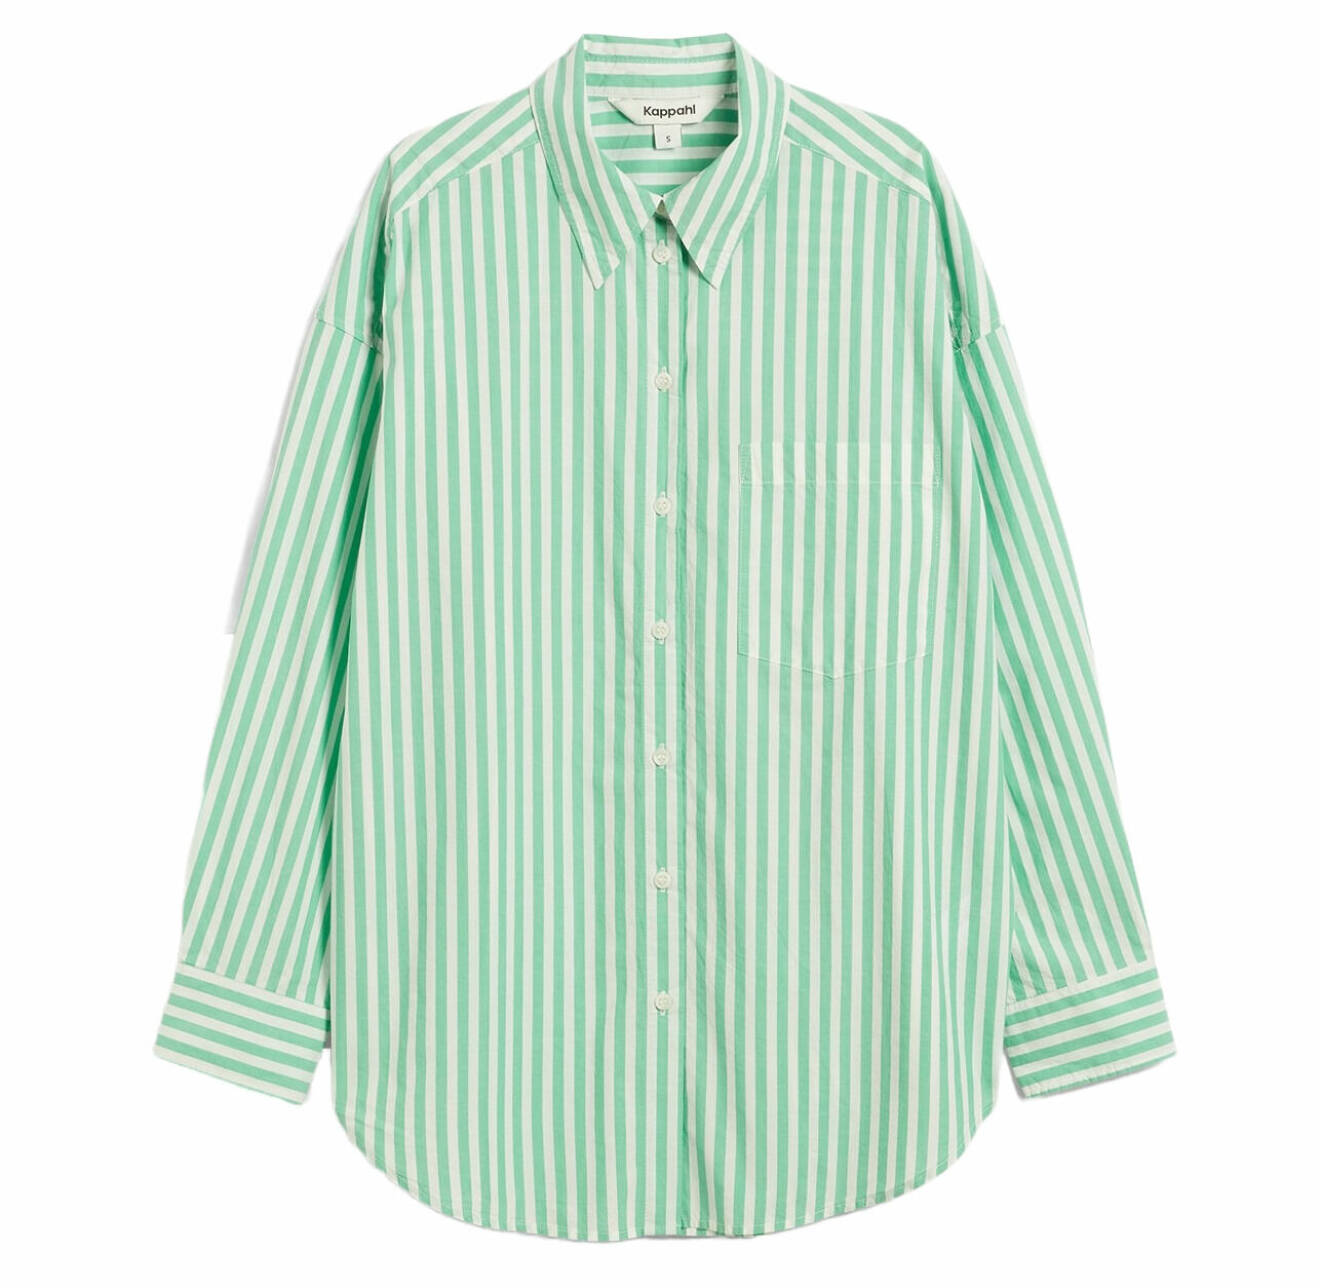 grön randig skjorta från kappahl